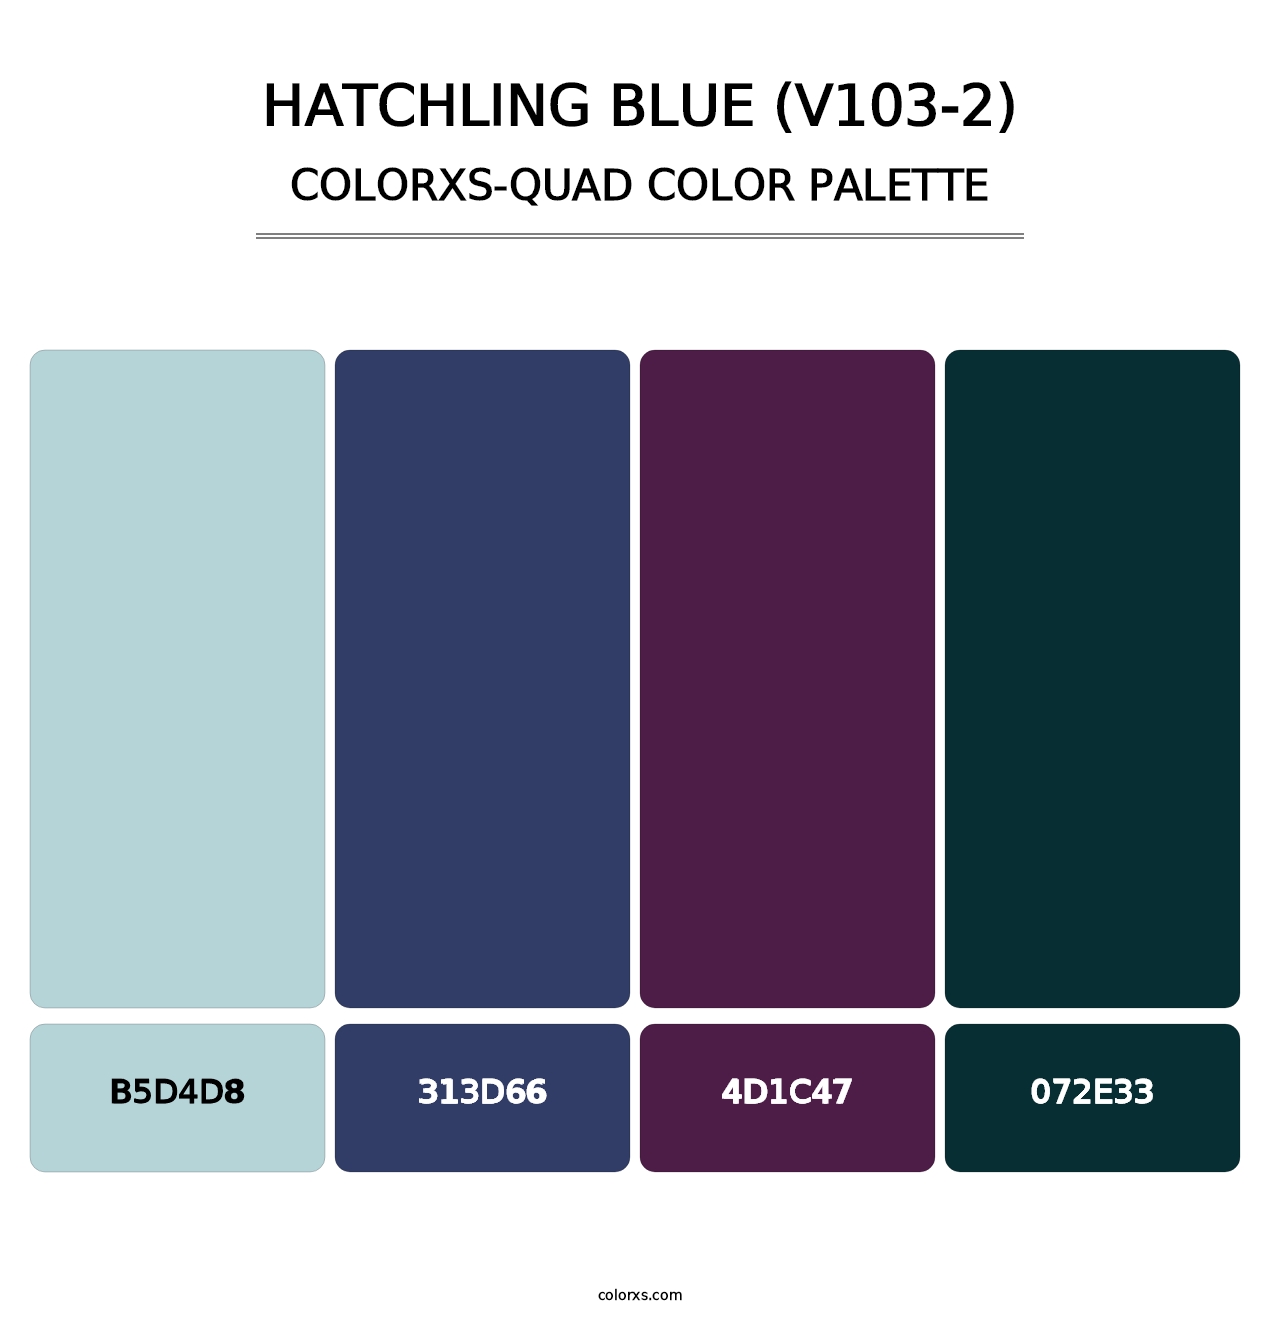 Hatchling Blue (V103-2) - Colorxs Quad Palette